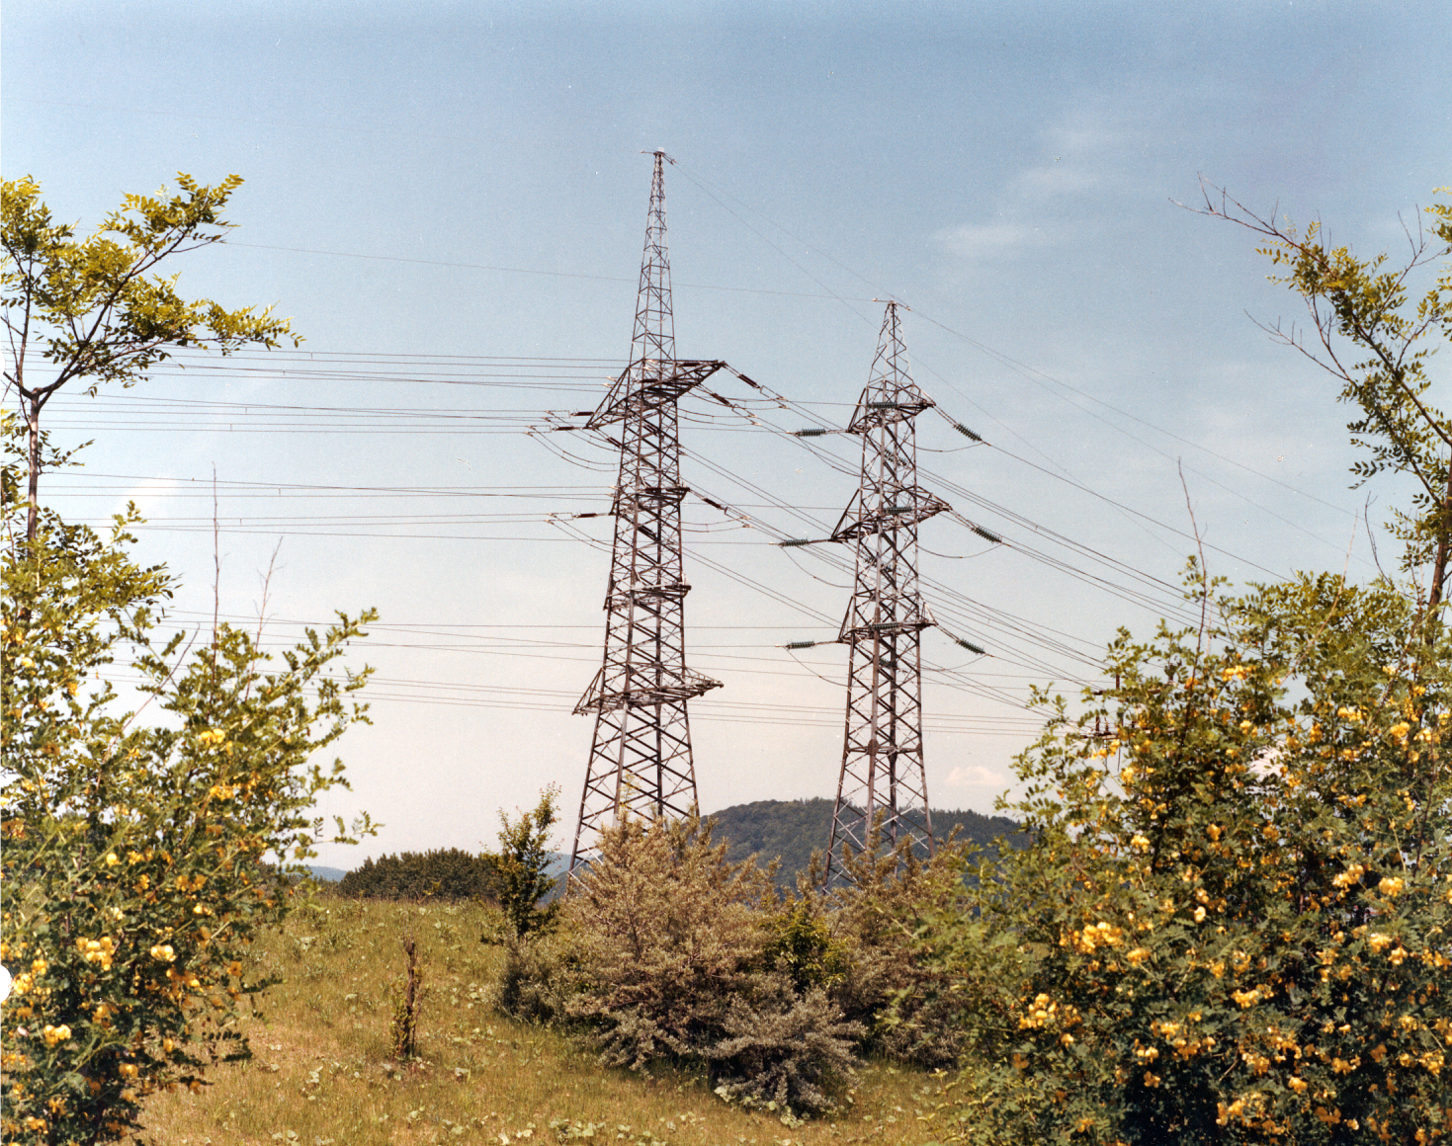 Bild zeigt zwei hohe Strommasten aus Metall auf einem grünen Hügel mit reichlich Vegetation und Bäumen im Vordergrund unter einem bewölkten Himmel.